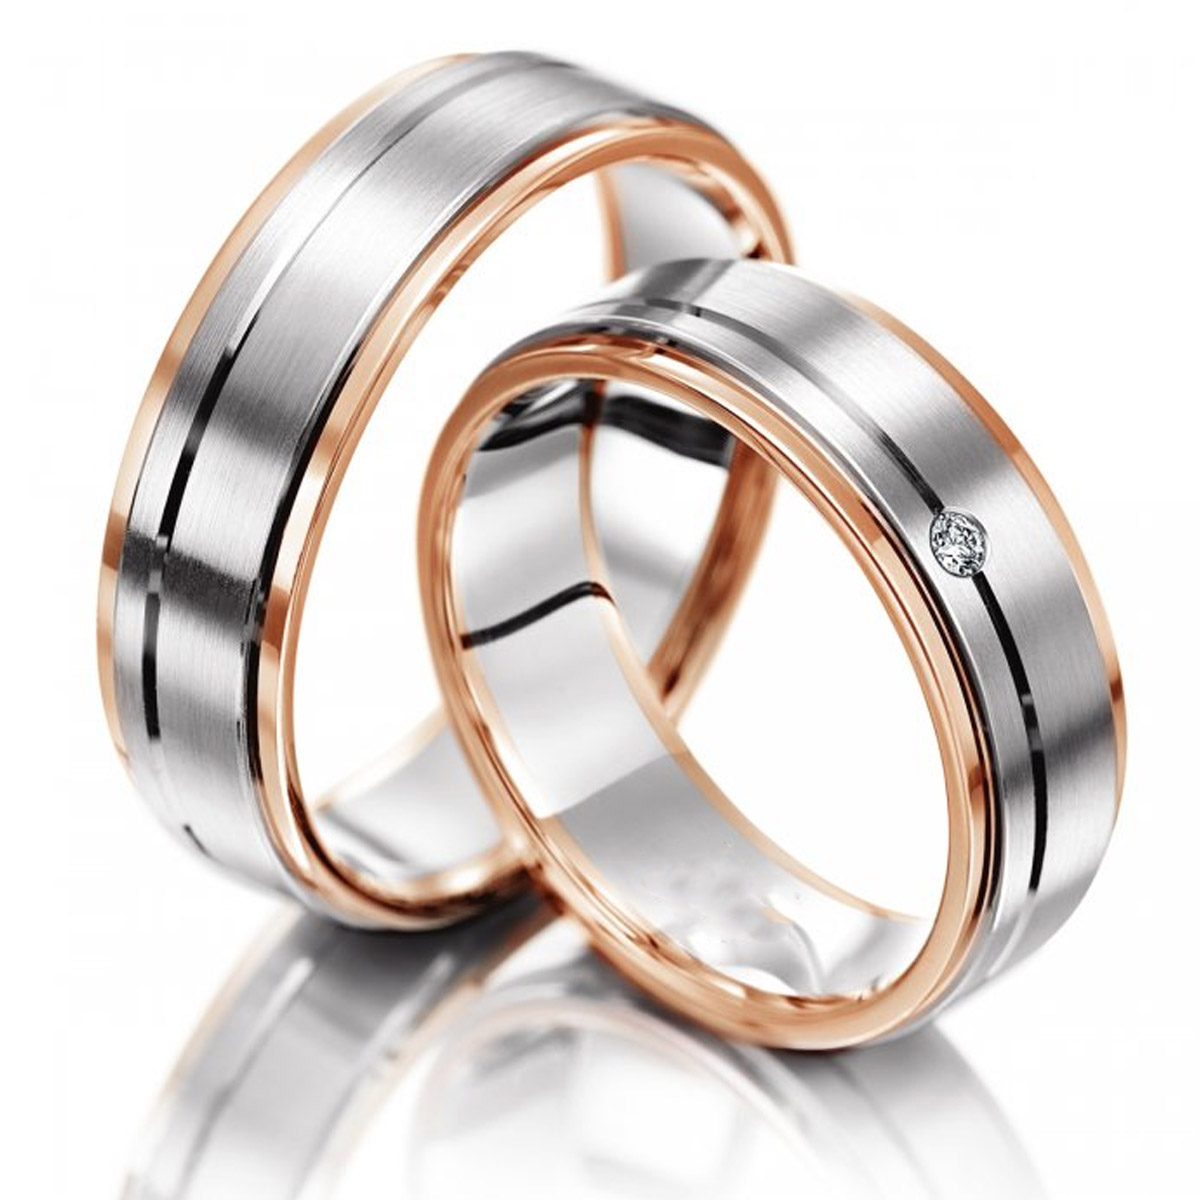 Двухцветные обручальные кольца с бриллиантом на заказ (Вес пары: 14 гр.)